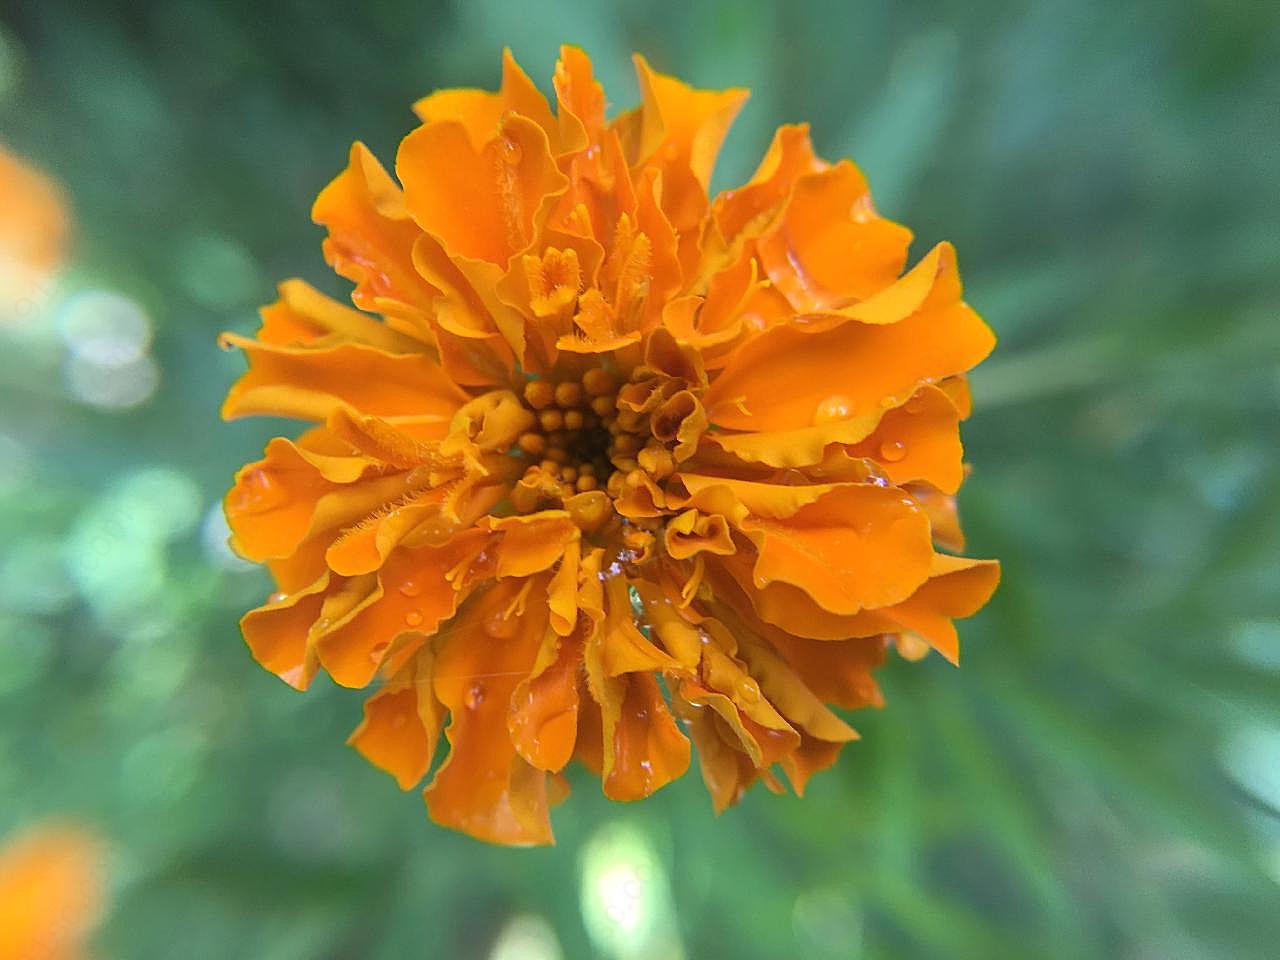 一朵橙色万寿菊图片菊花